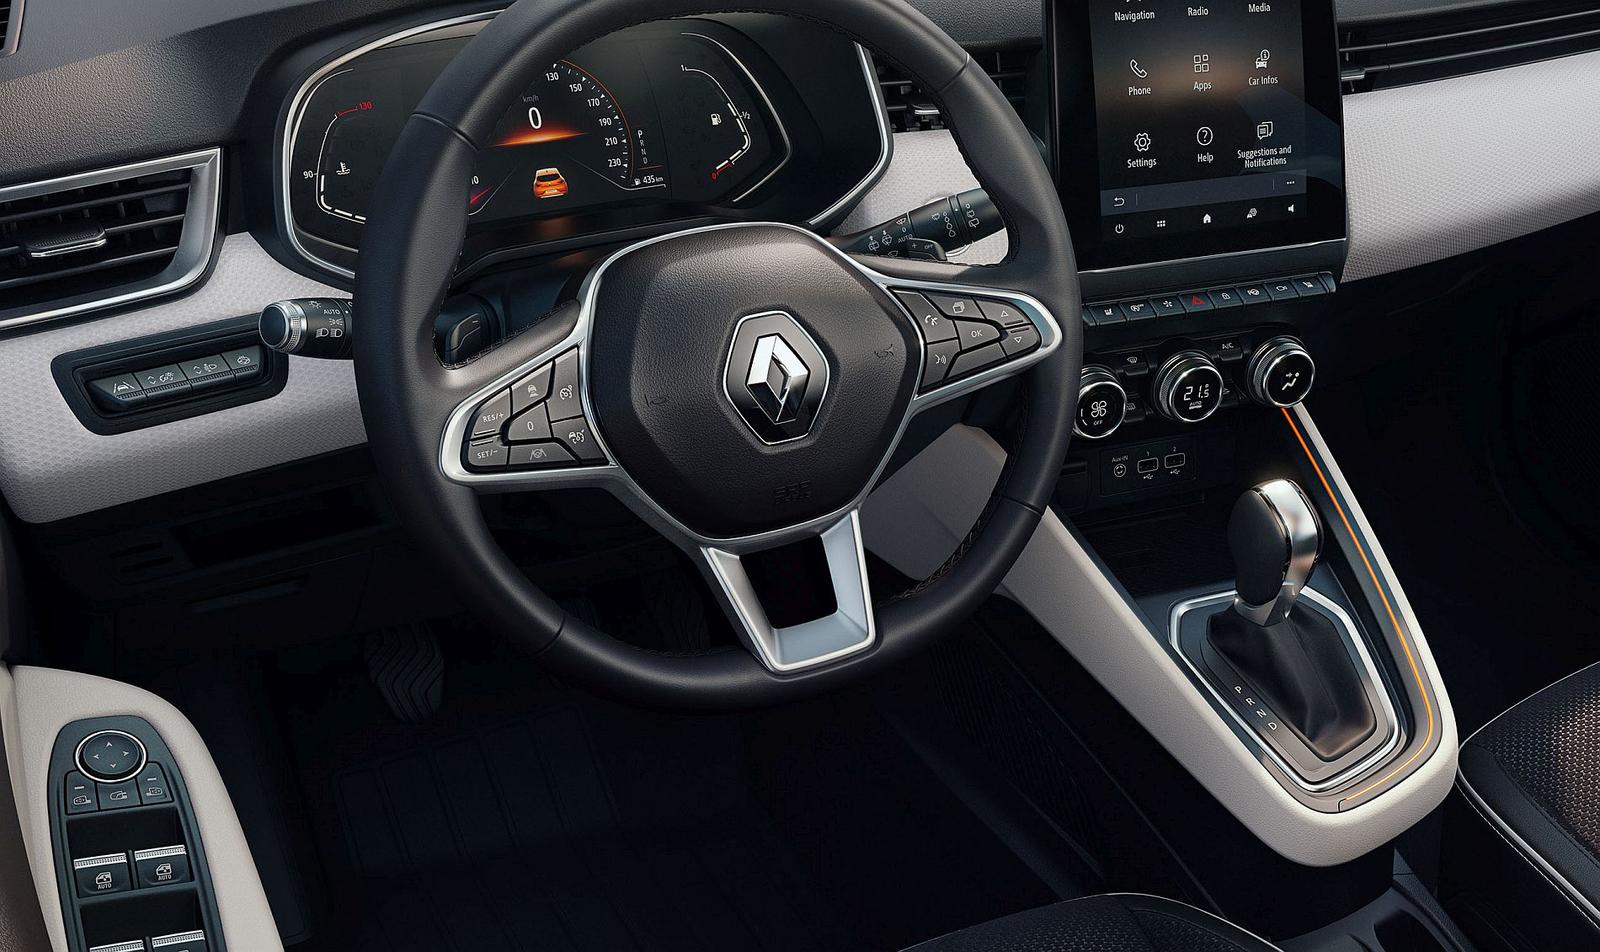 Renault Clio interior 2019 (5)11